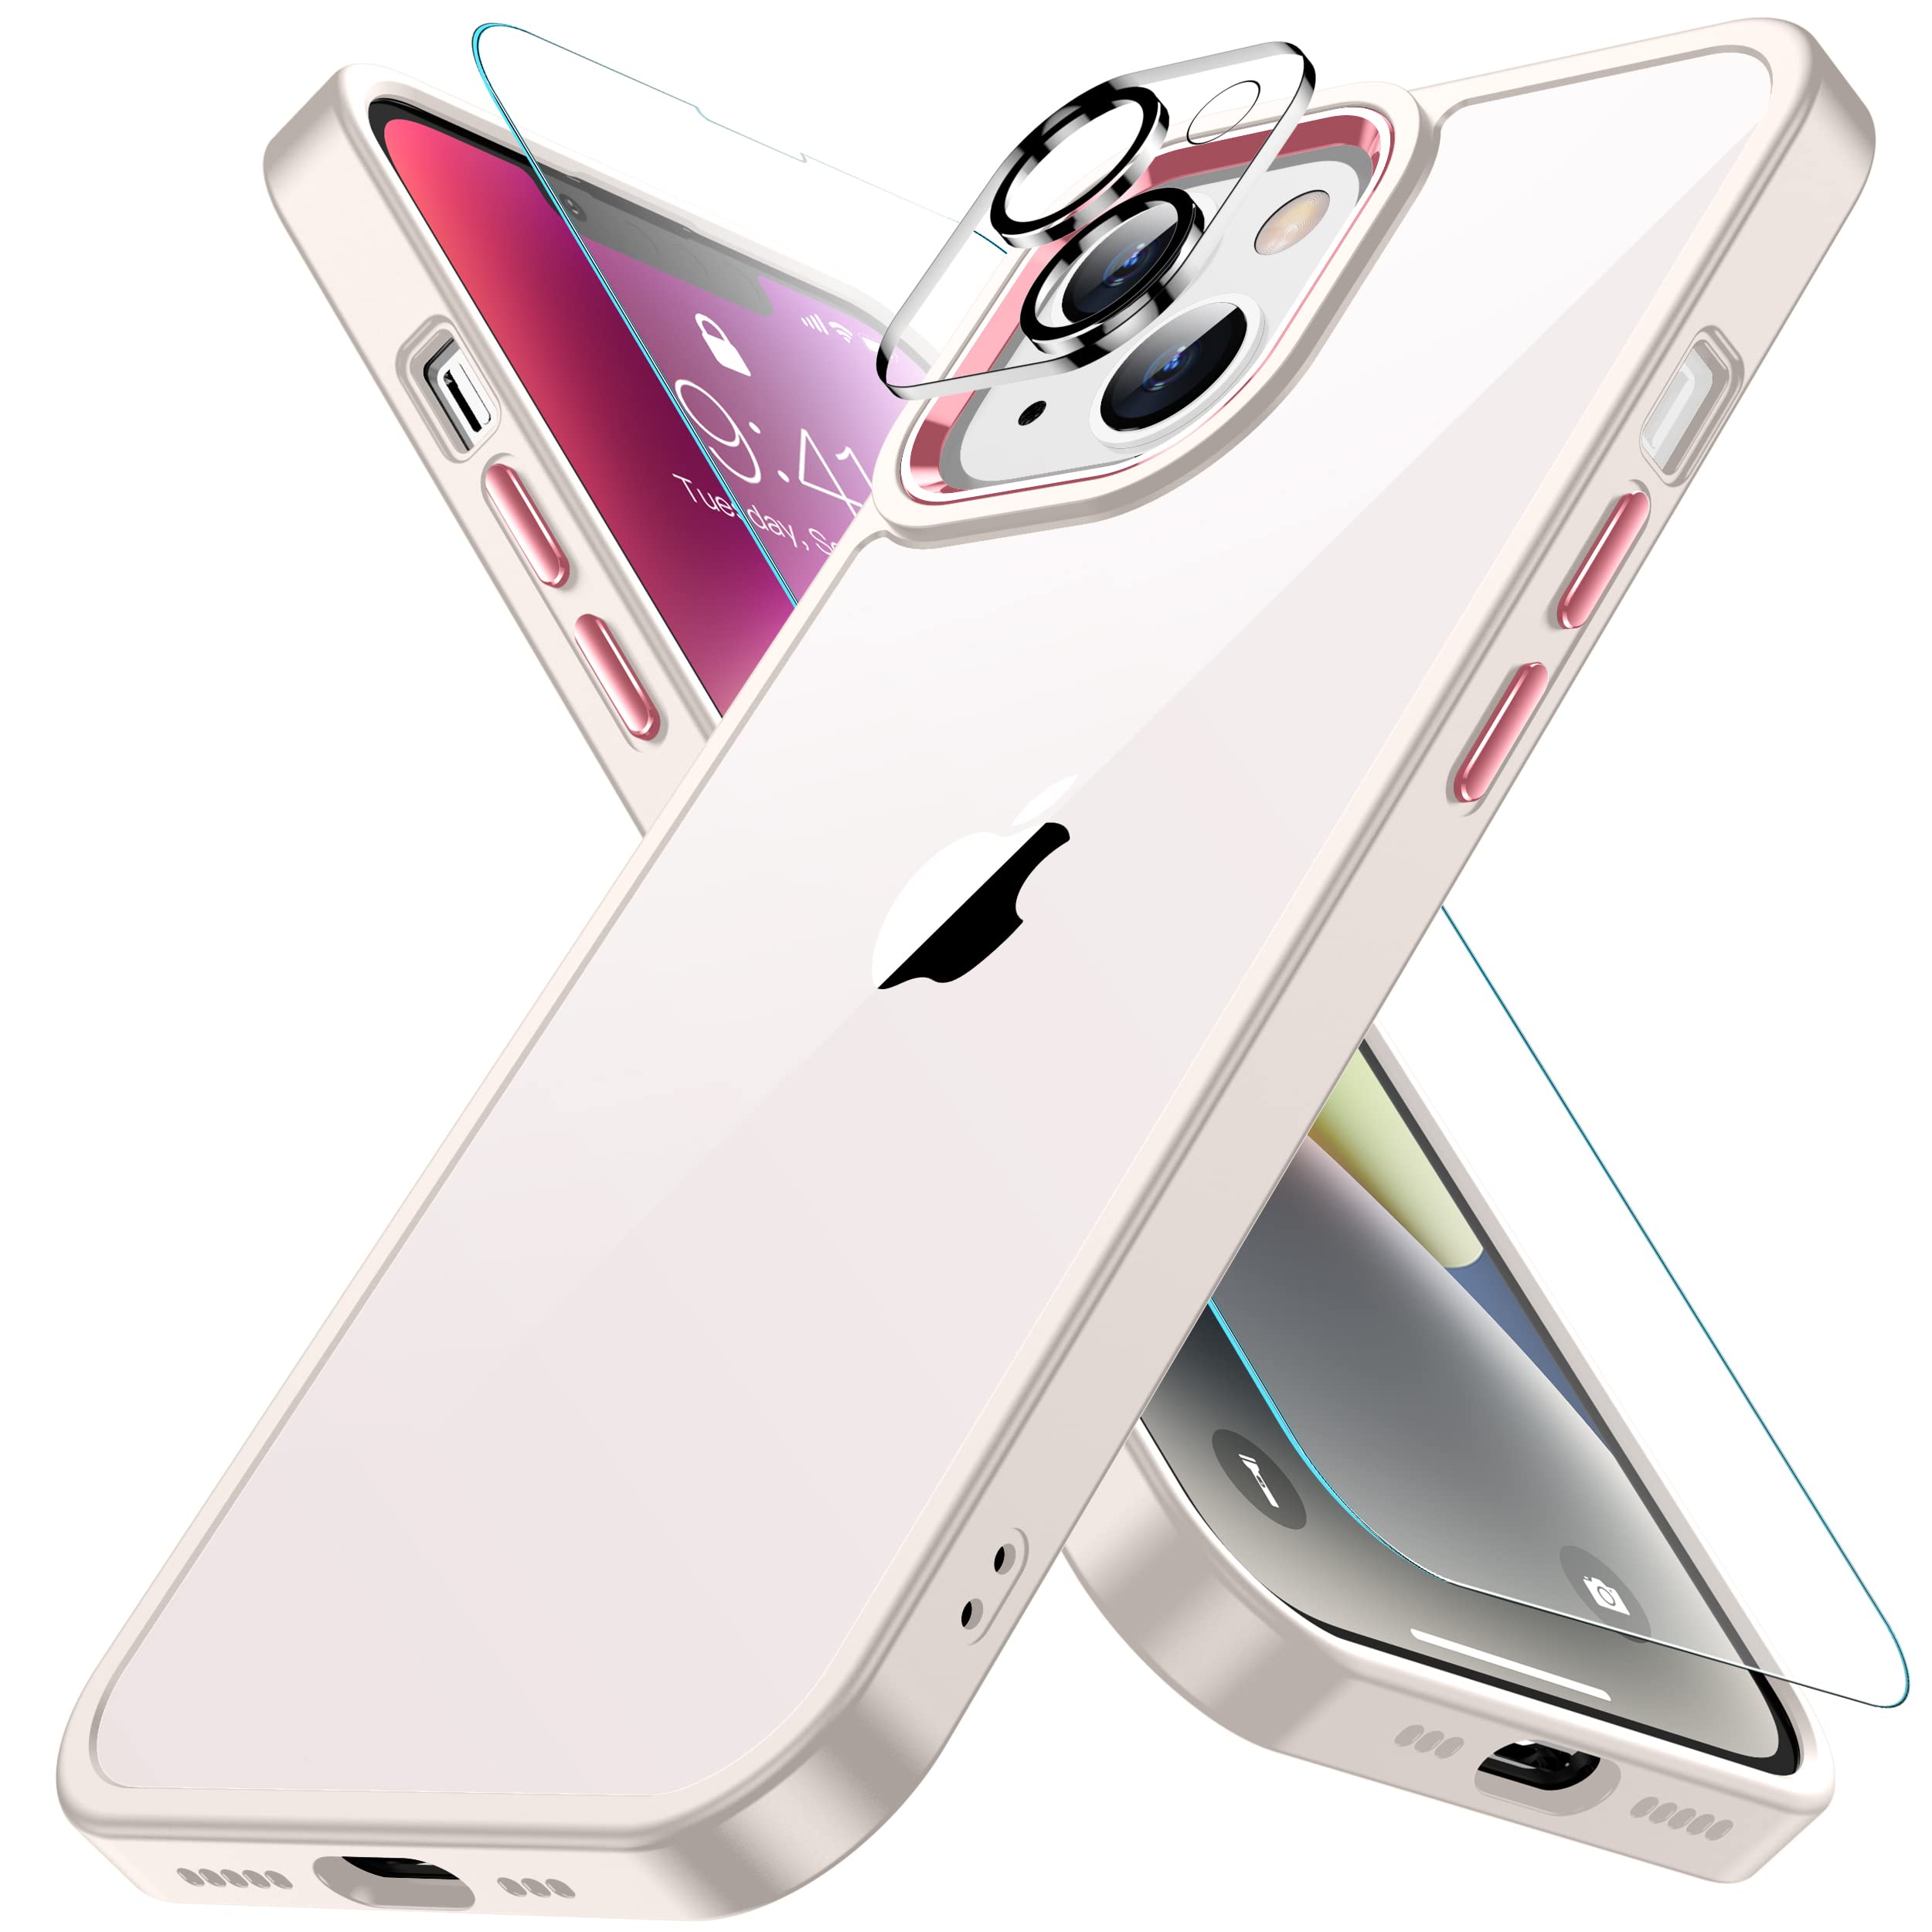 iPhone14 用 ケース オフホワイト 耐衝撃 カメラレンズ保護付き 黄ばみ防止 アイフォン14ケース 米軍MIL規格 耐久性 SGS認証 アイホン14ケース ワイヤレス充電対応 スマホケース あいふぉん14 カバー 6.1インチ